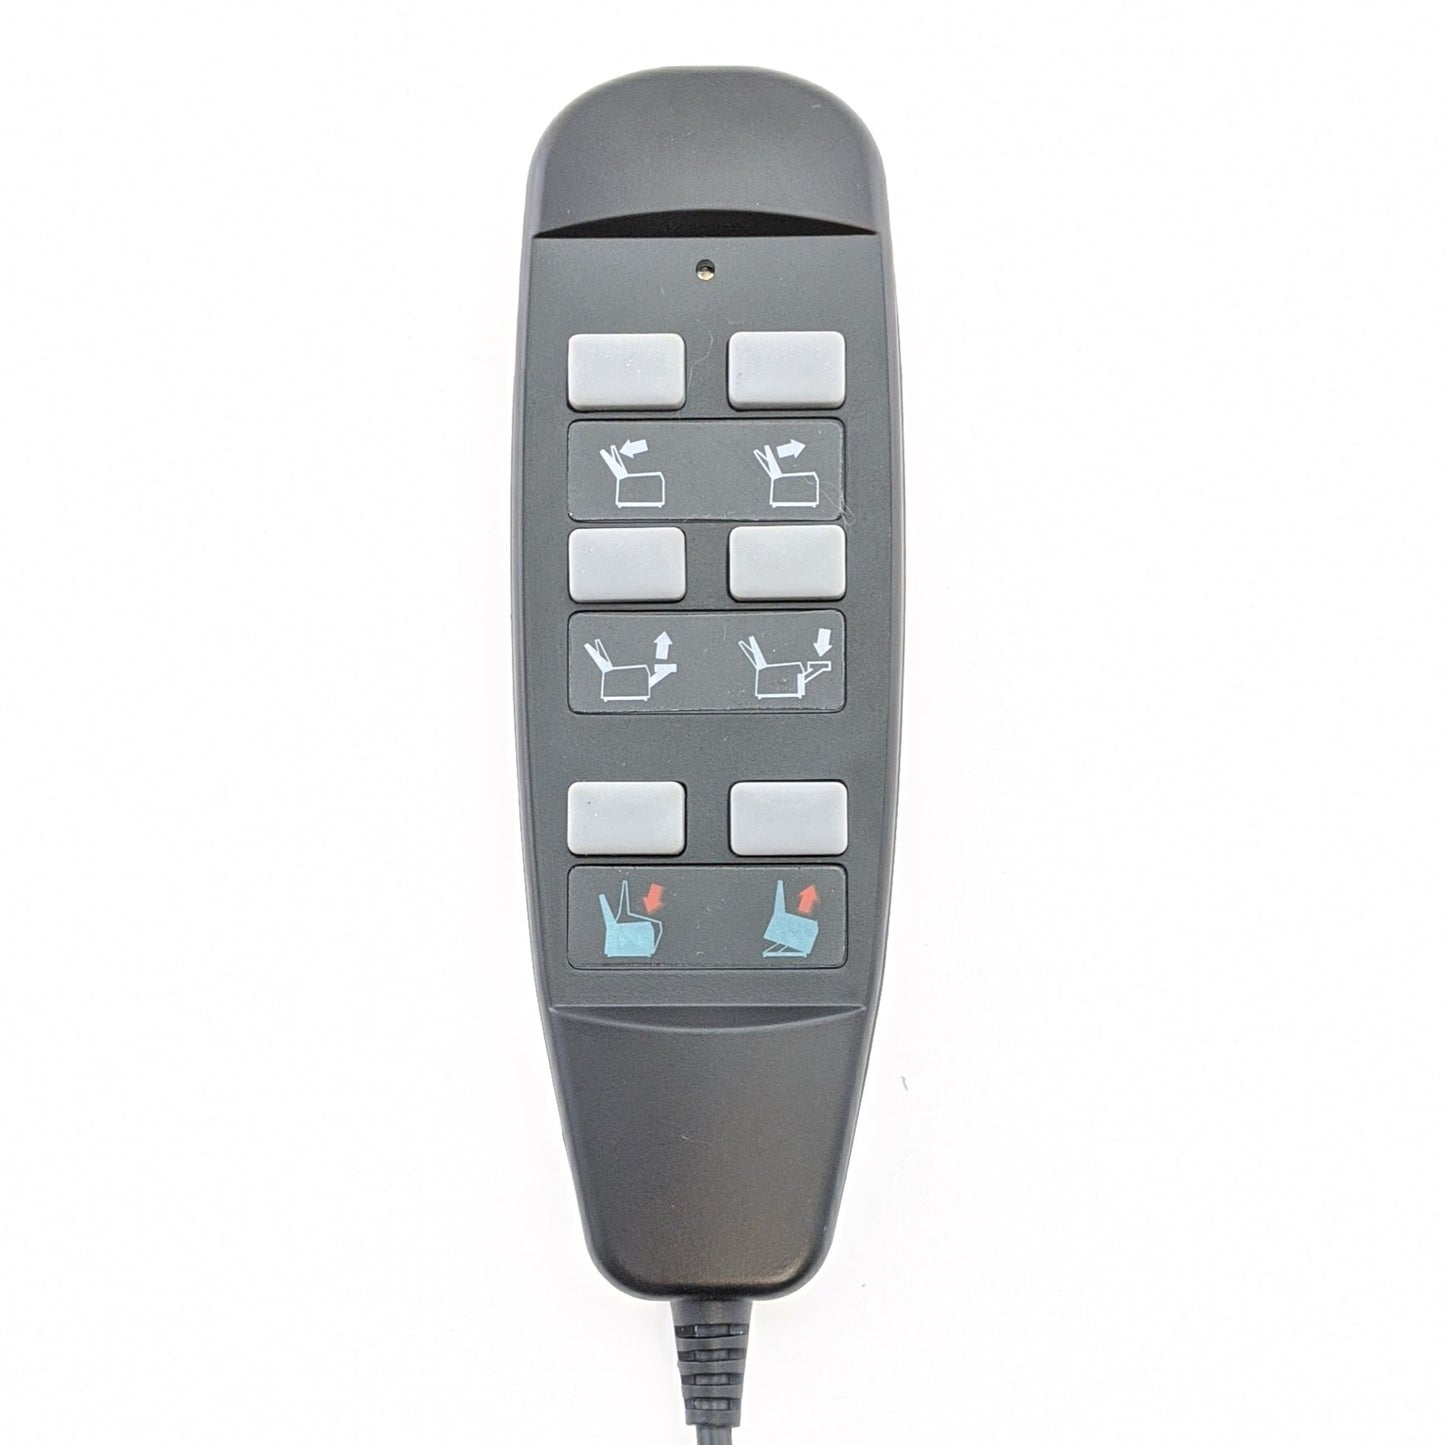 Remote - ELE144505 - HSW208E - 6 Wire